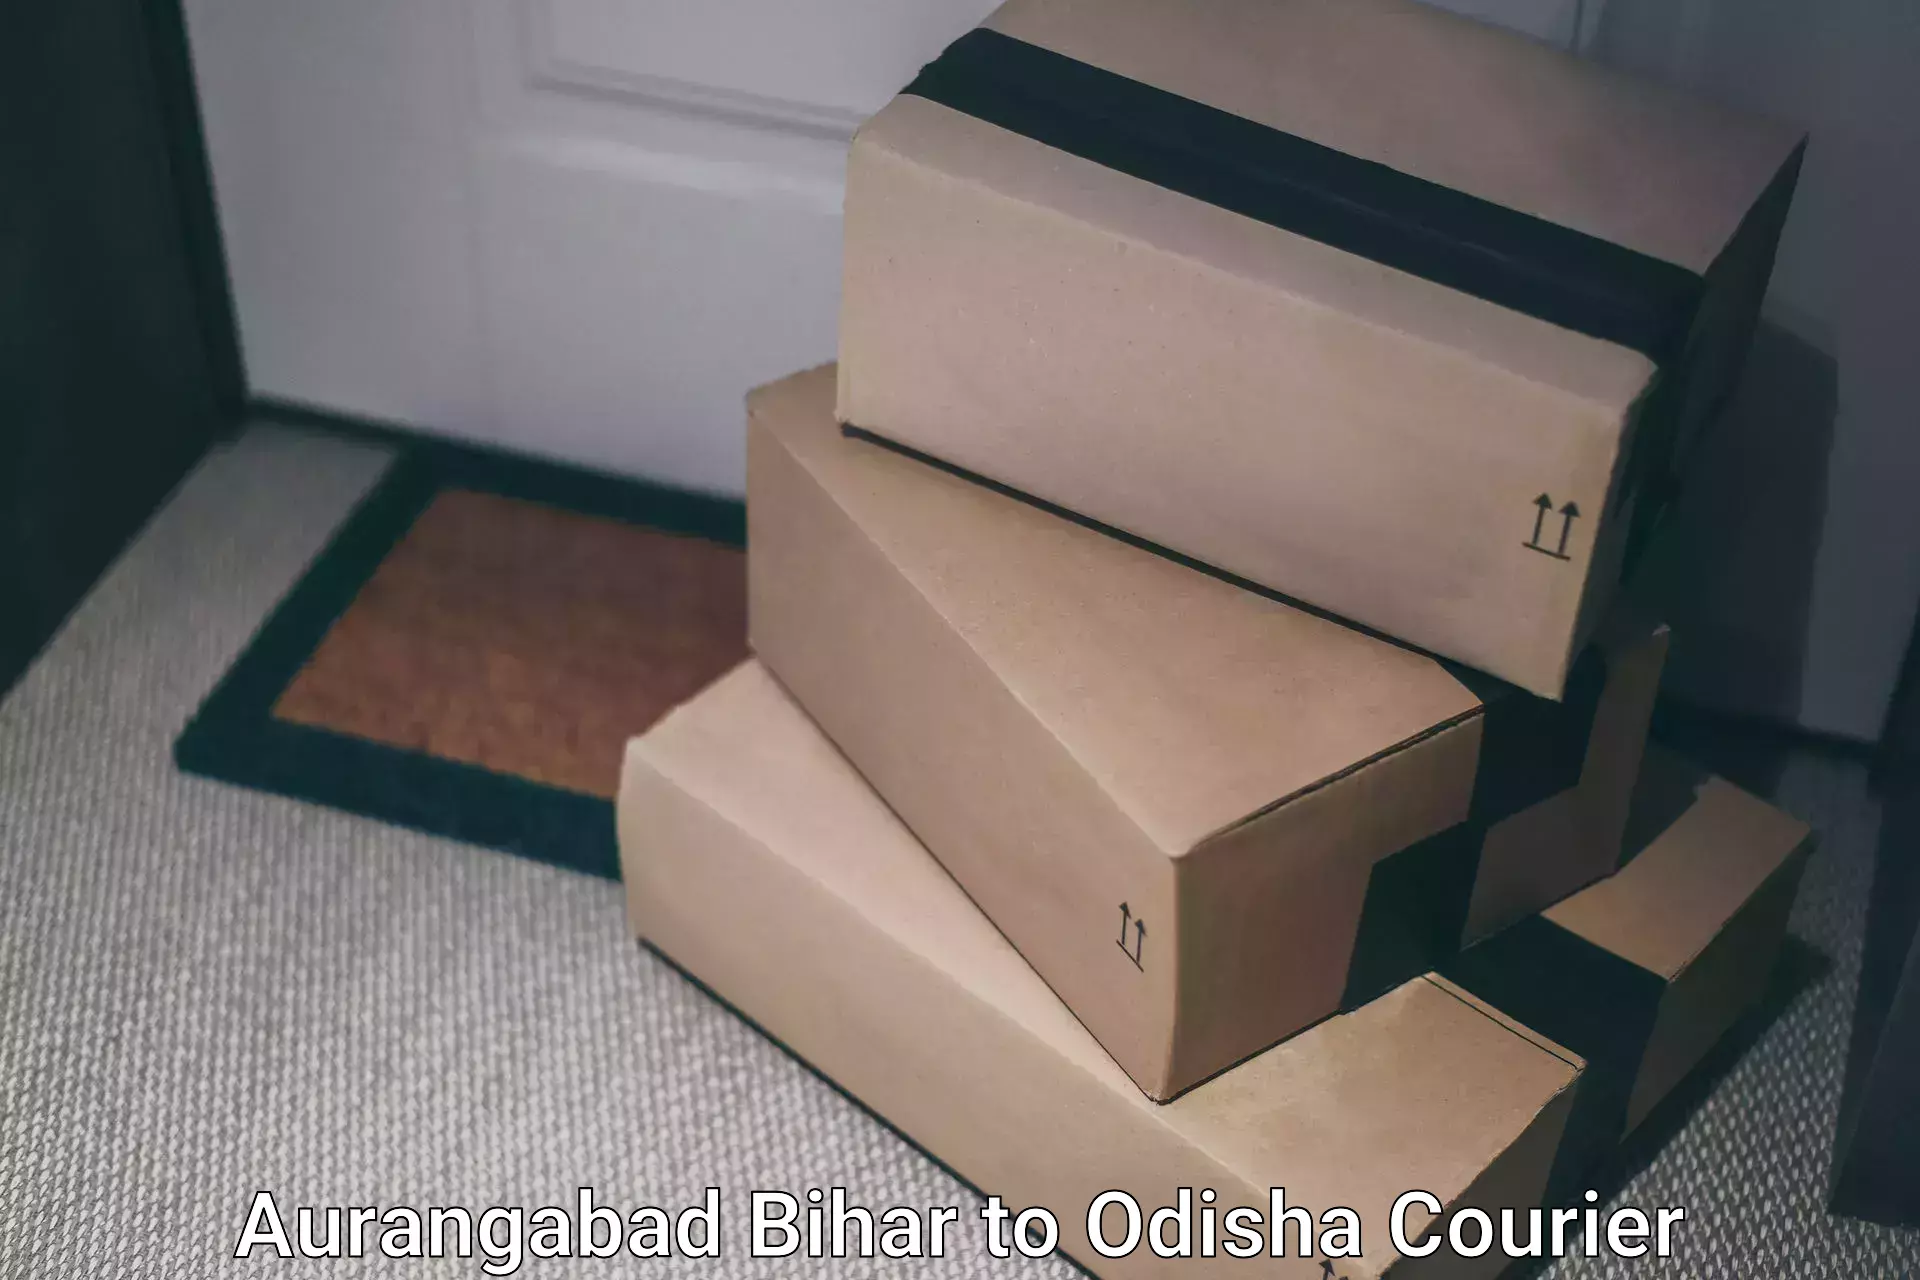 Global parcel delivery Aurangabad Bihar to Gajapati